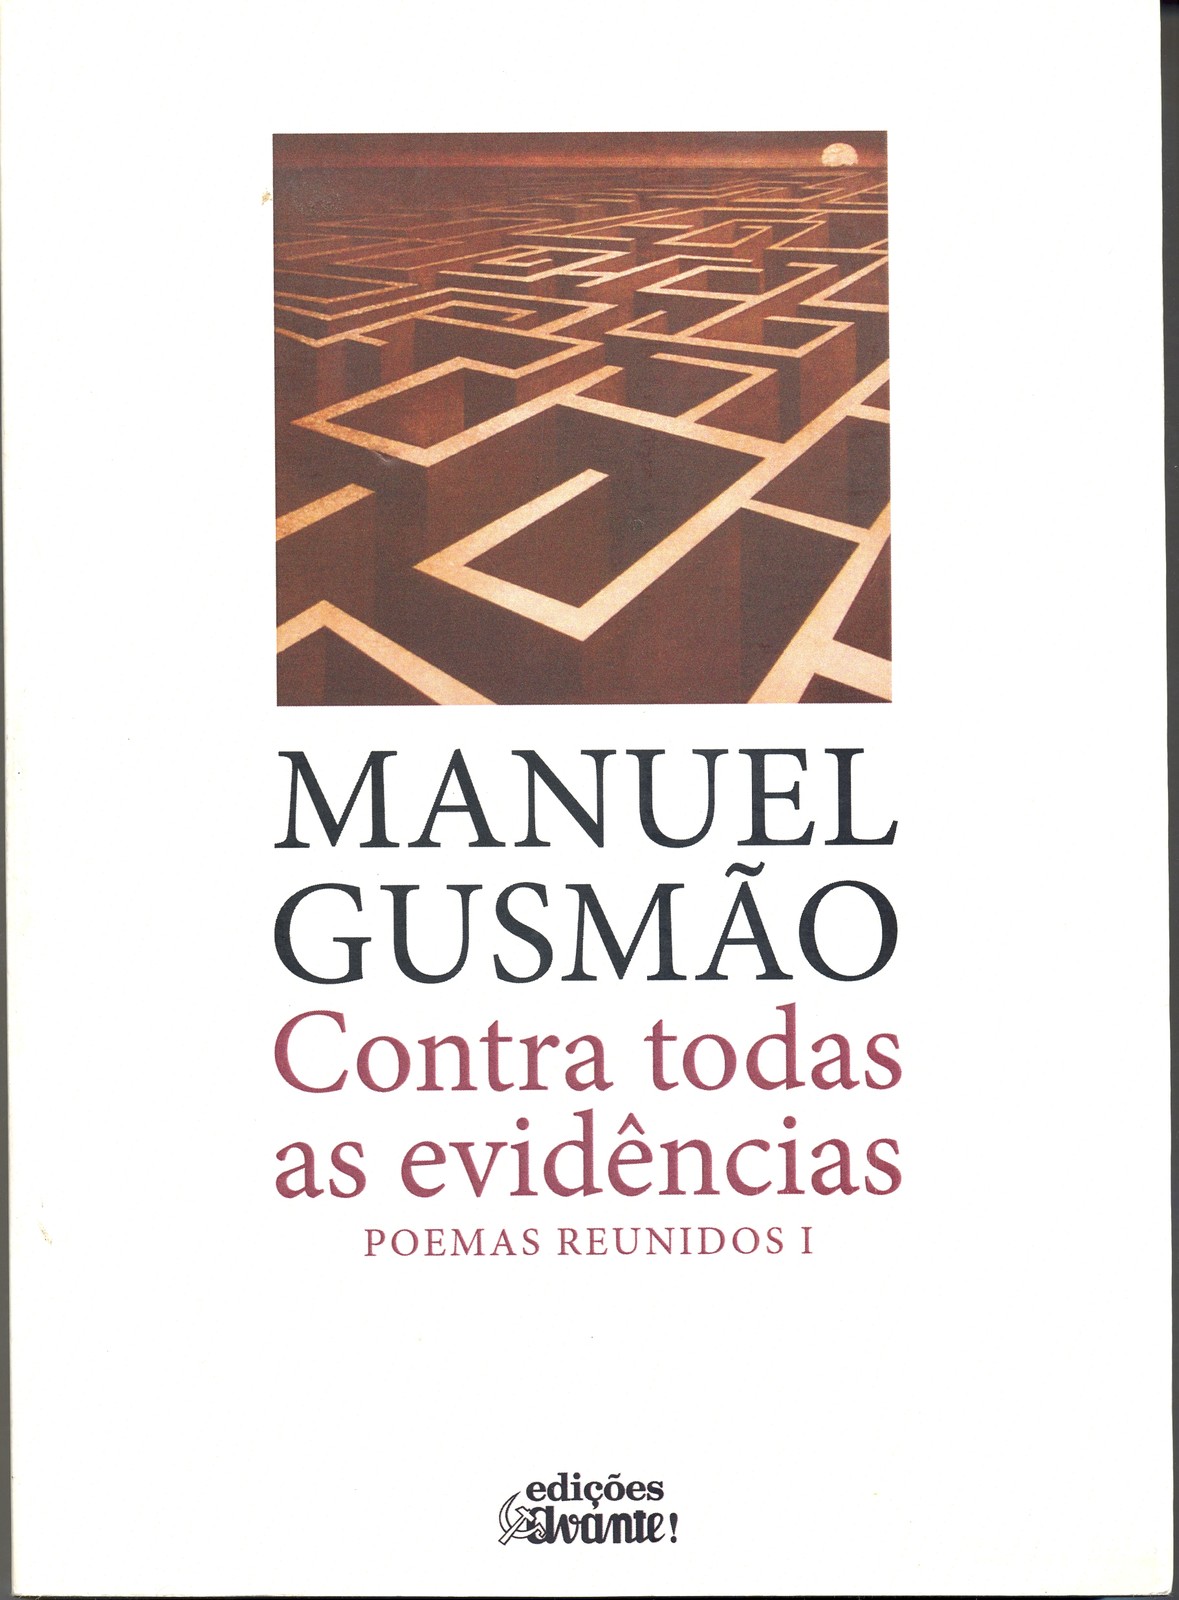 Manuel Gusmão - Contra Todas as Evidências, Poemas Reunidos I